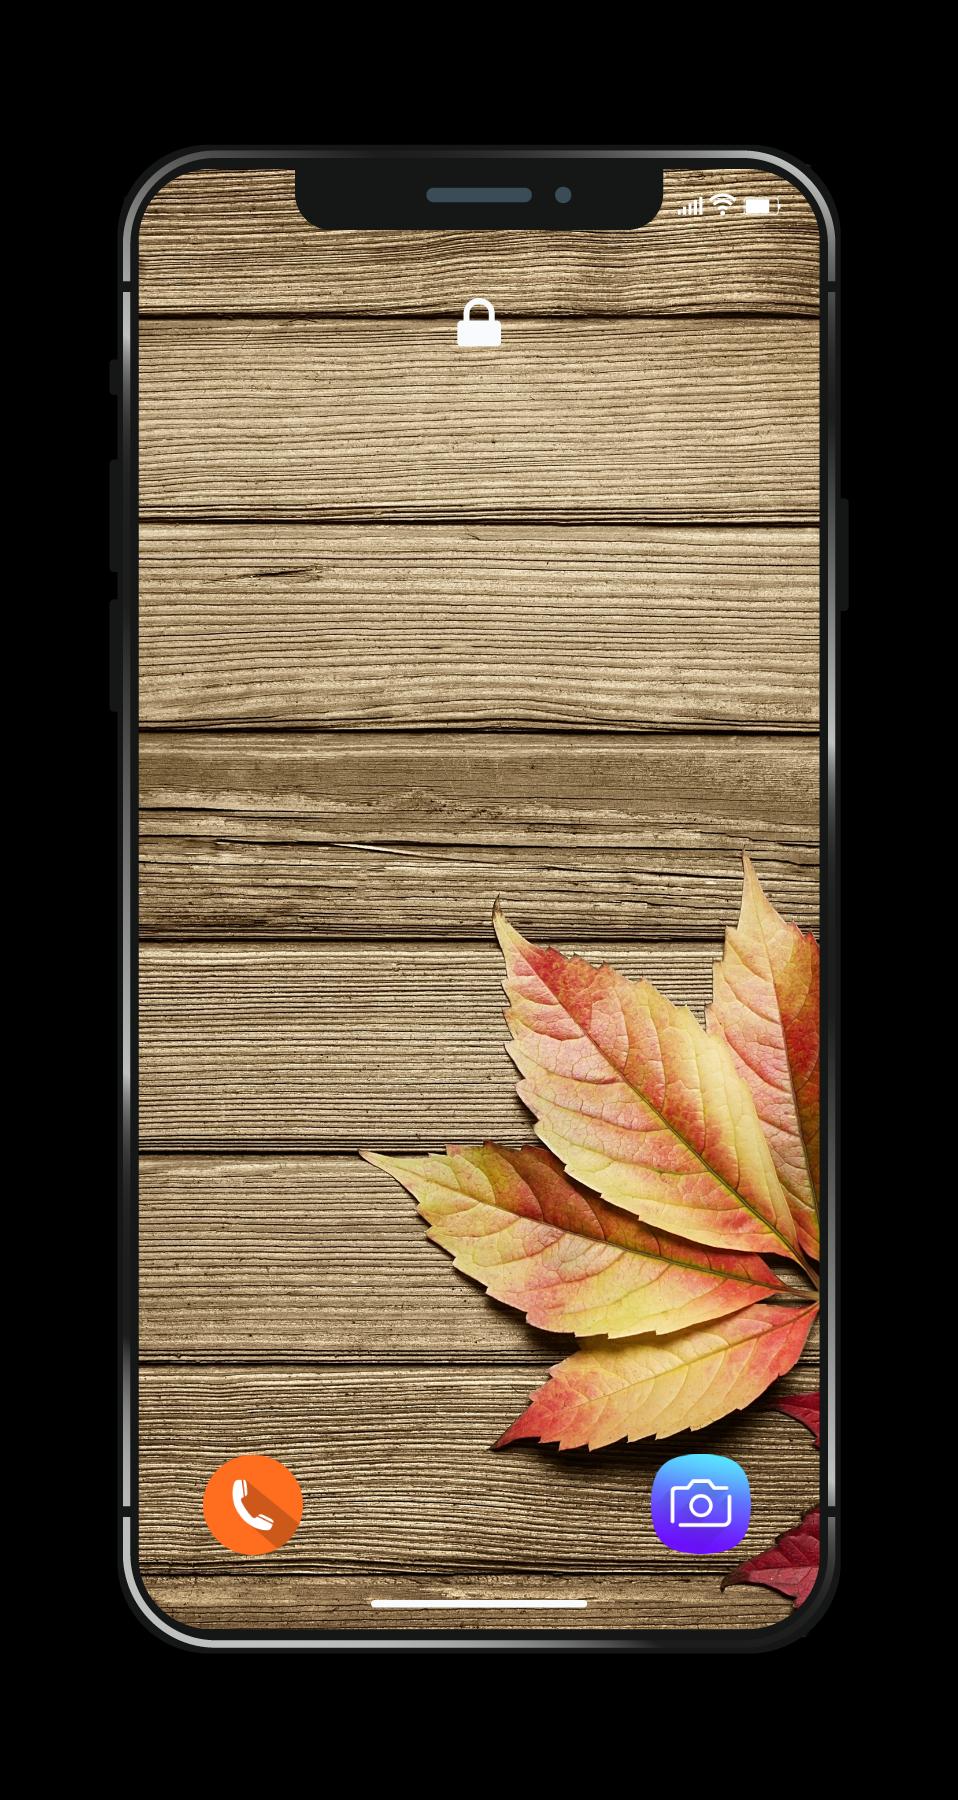 Hình nền gỗ HD là tất cả những gì bạn cần để tạo nên một không gian tuyệt đẹp. Hãy cùng chiêm ngưỡng các mẫu hình nền gỗ đẹp nhất với độ phân giải cao để trải nghiệm chất lượng ảnh tuyệt vời nhất.